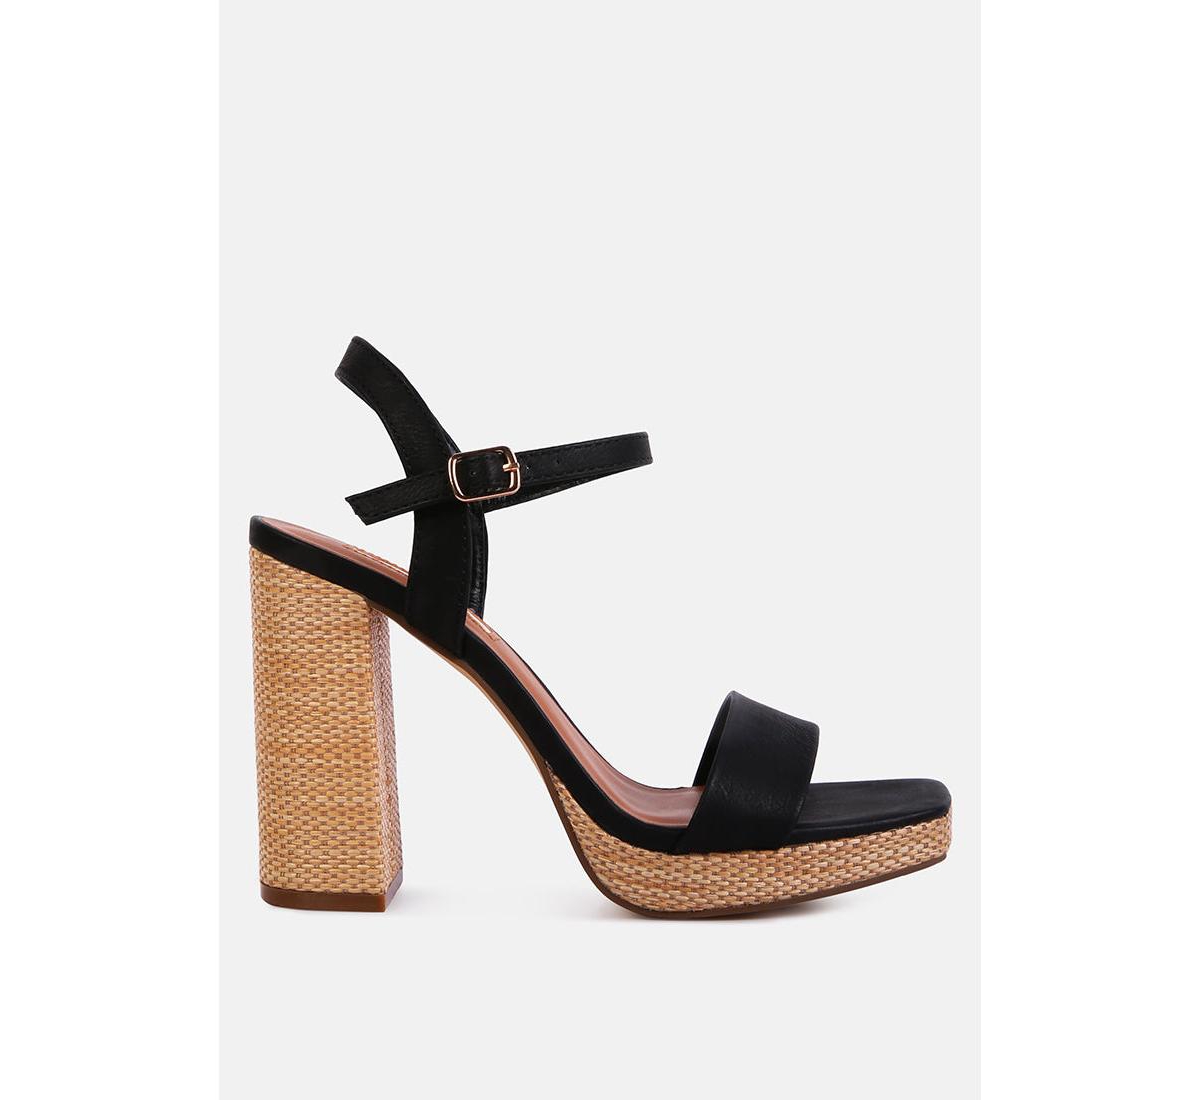 Buxor Woven Textured High Block Heeled Sandals - Black